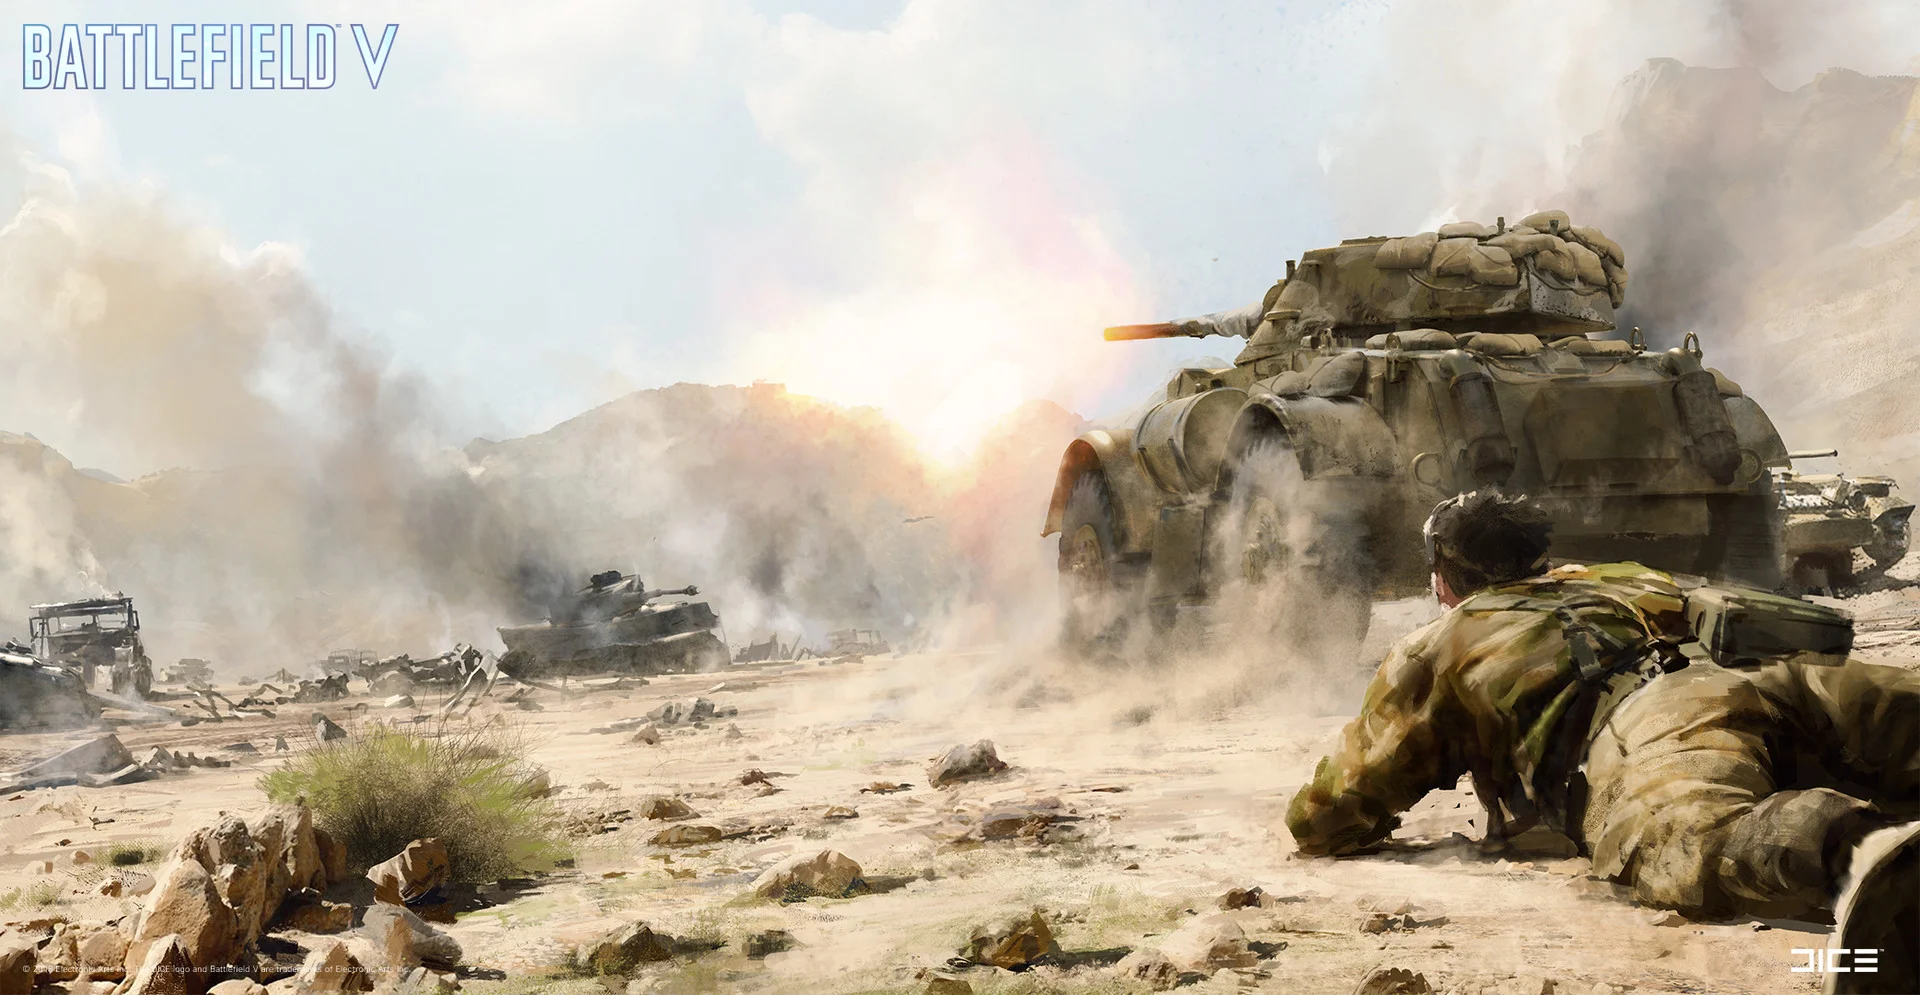 Взгляните на атмосферные концепт-арты и иллюстрации по Battlefield V - фото 4